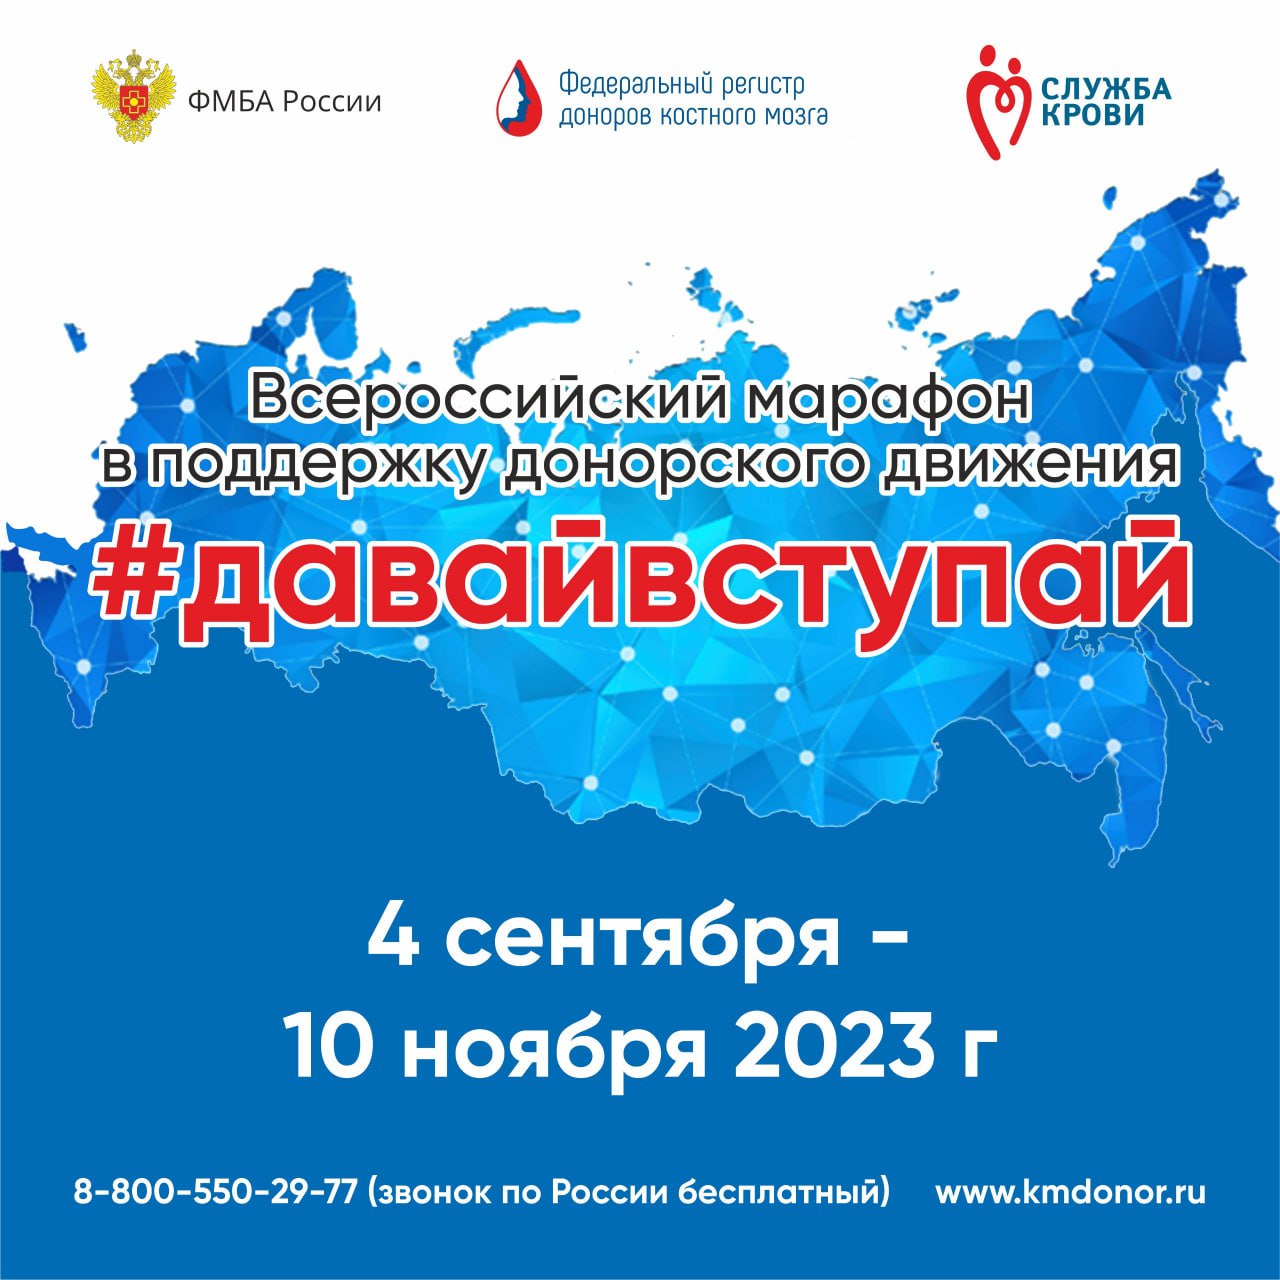 Пензенская область станет членом Всероссийского марафона донорства костного мозга